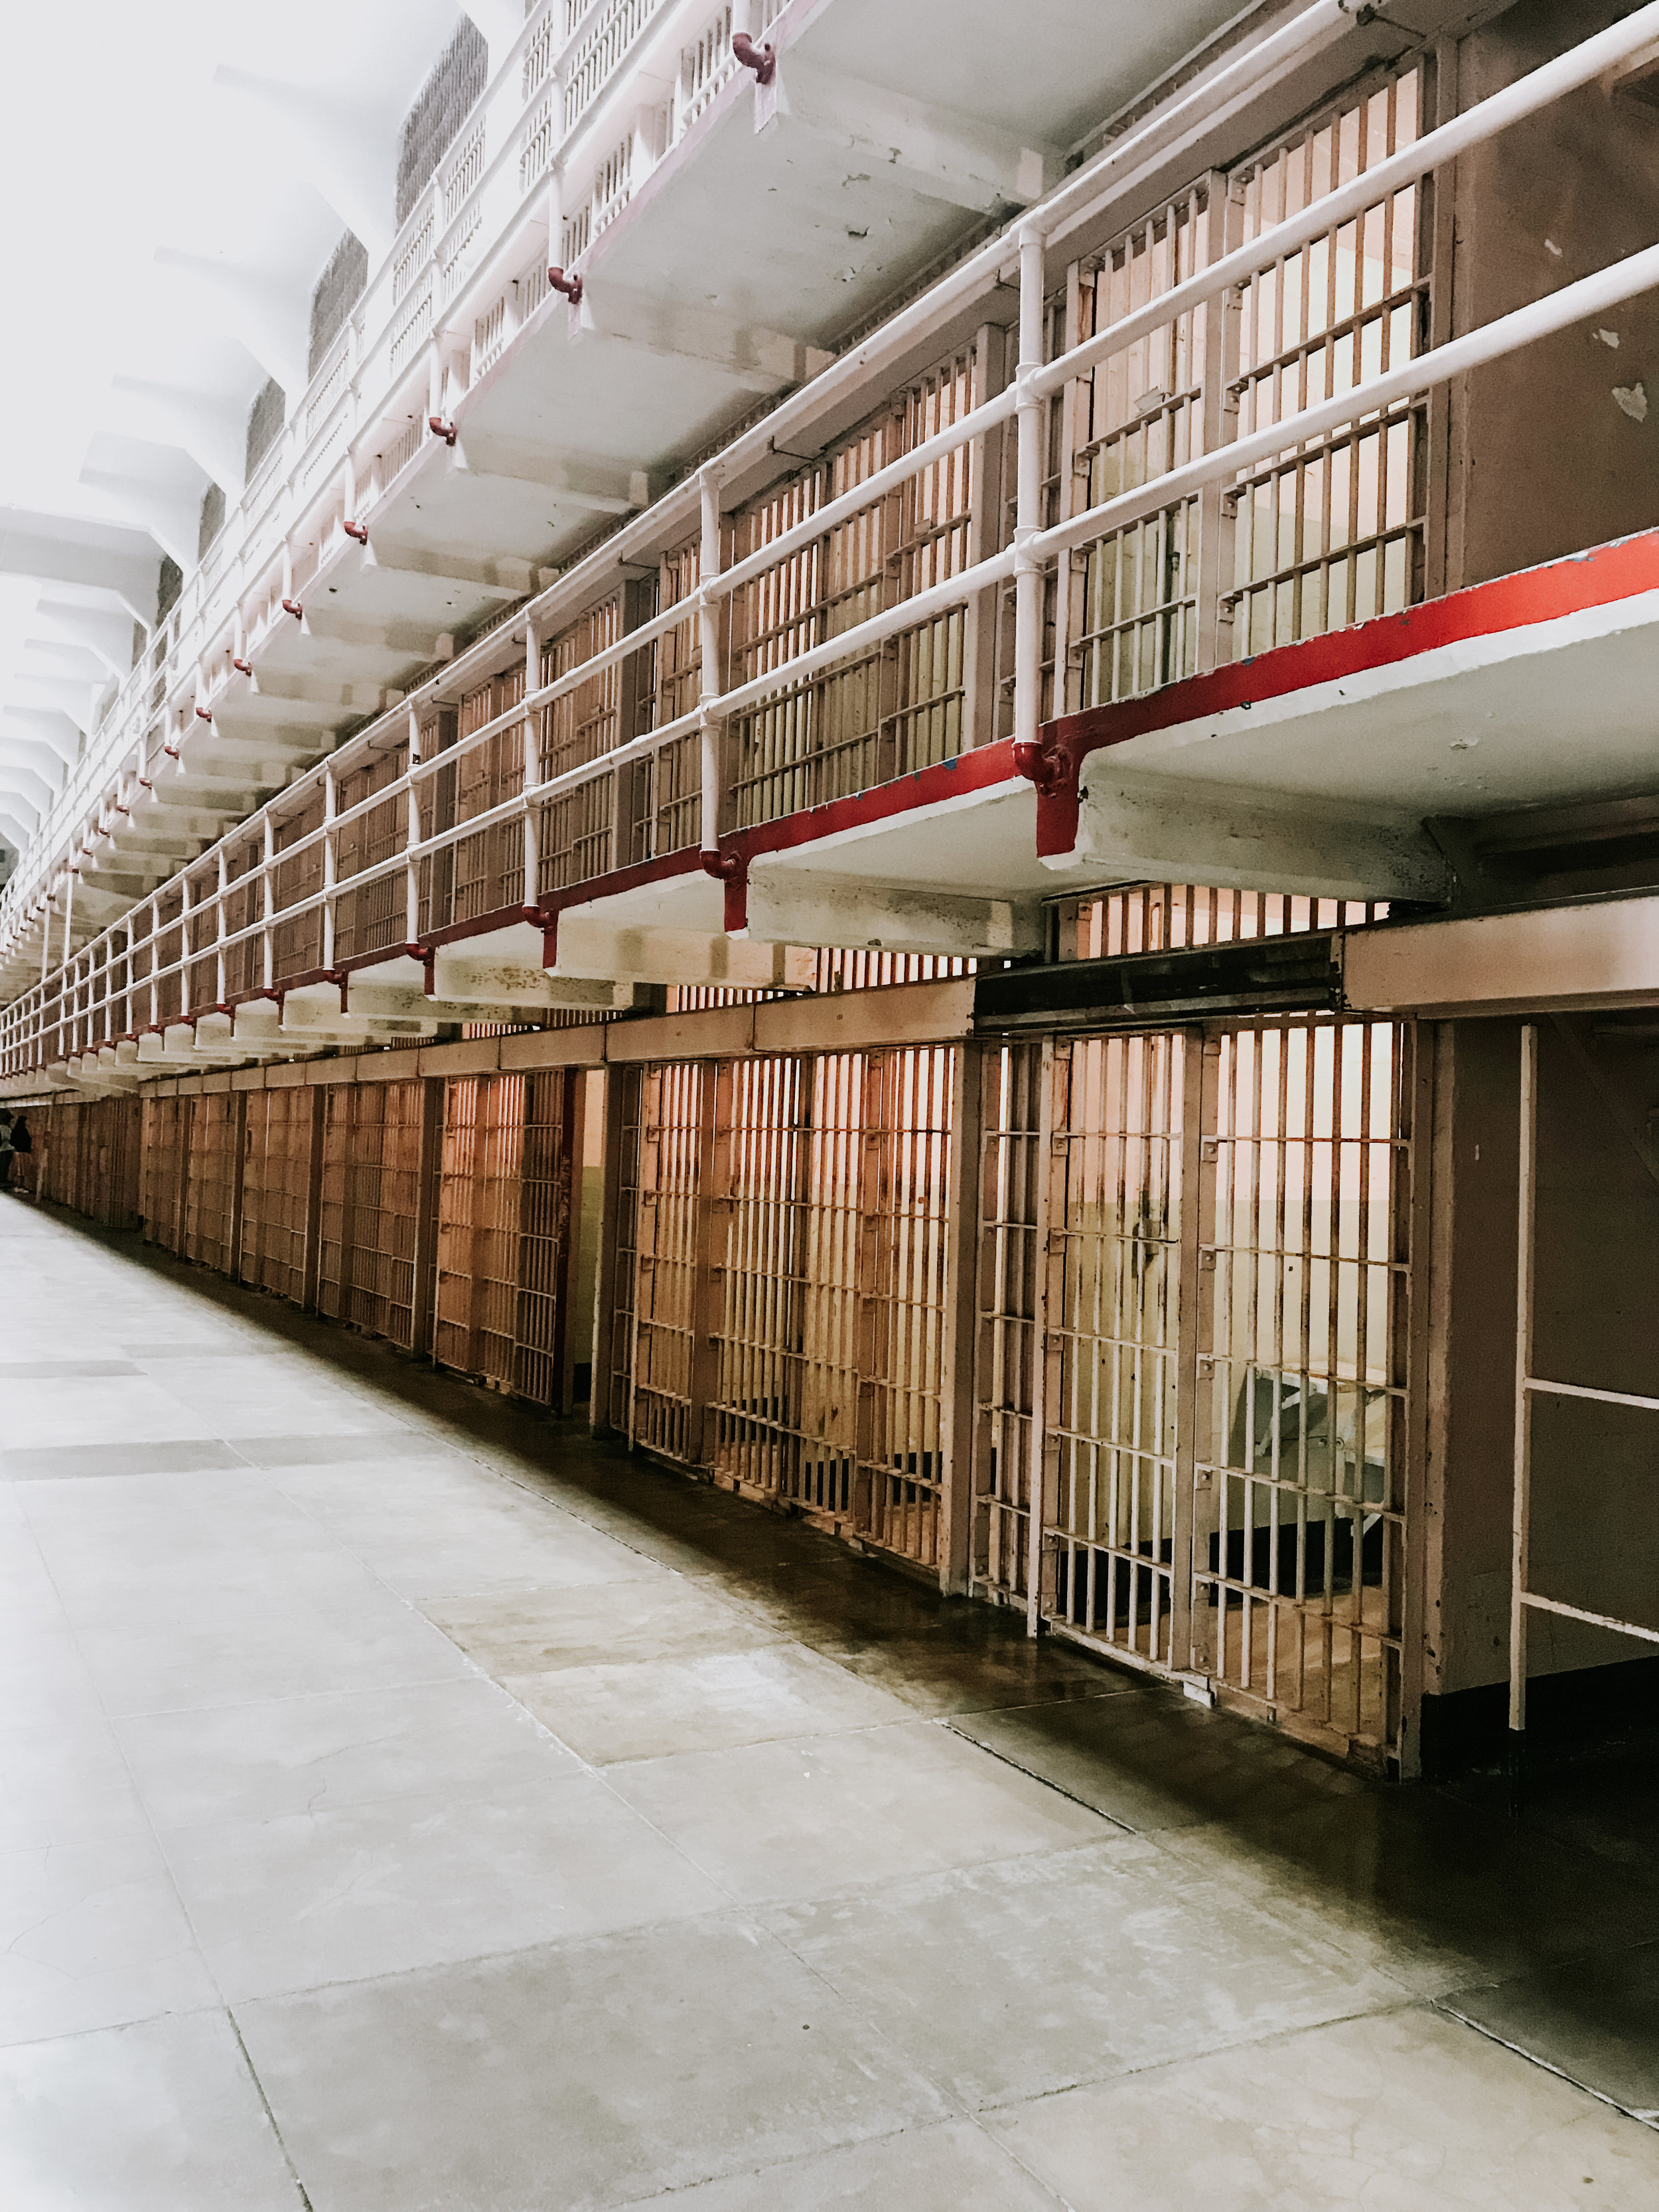 Inside Alcatraz prison